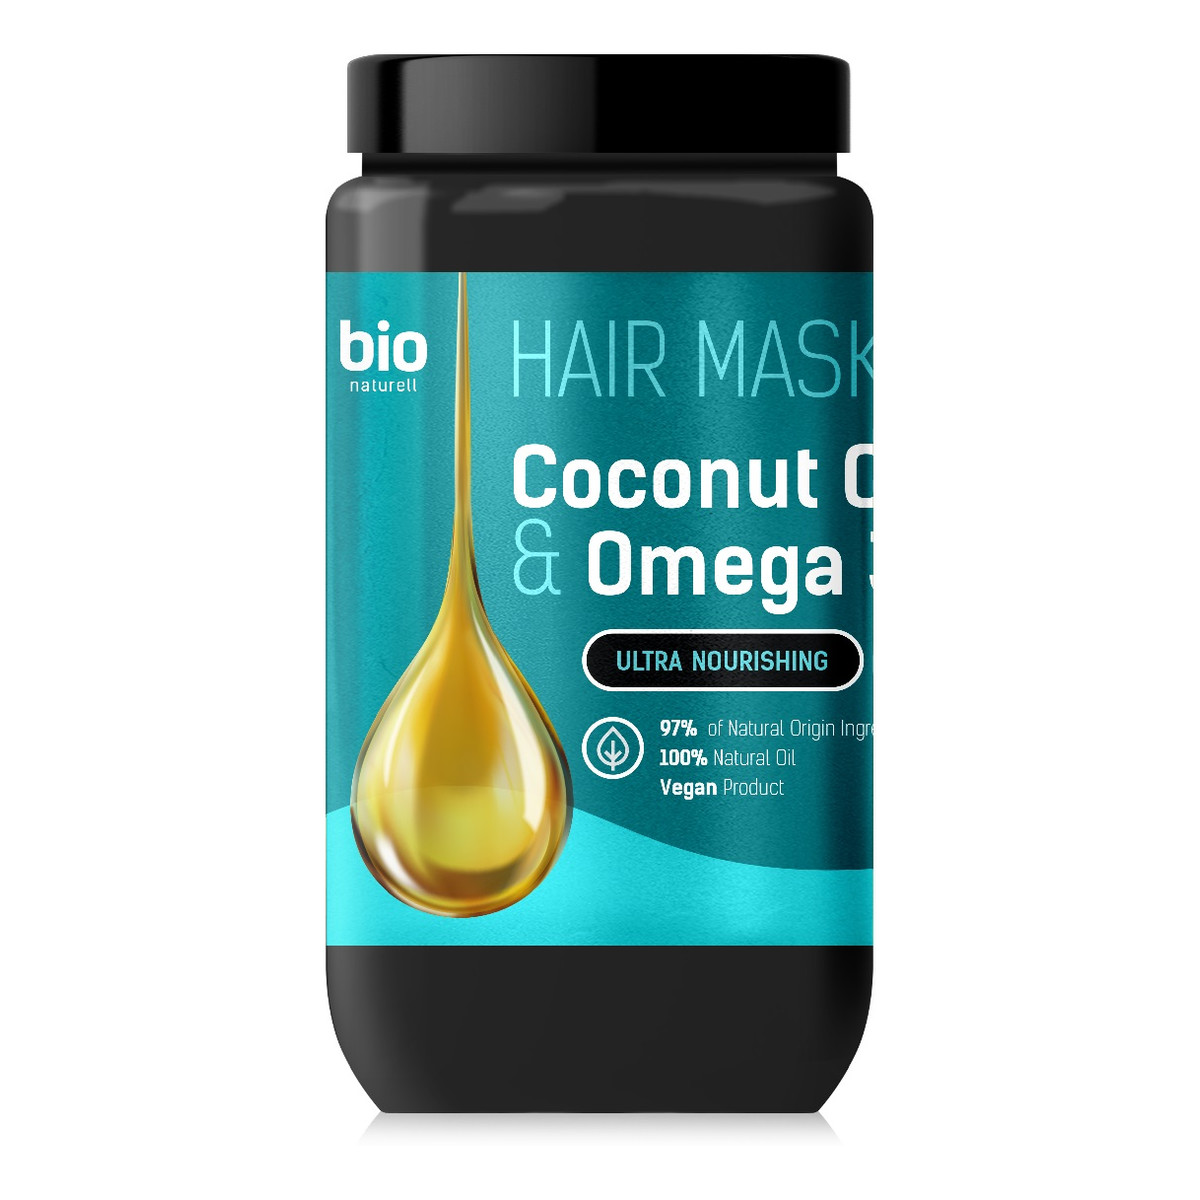 Bio Naturell Maska do włosów z olejem kokosowym i omega 3 946ml